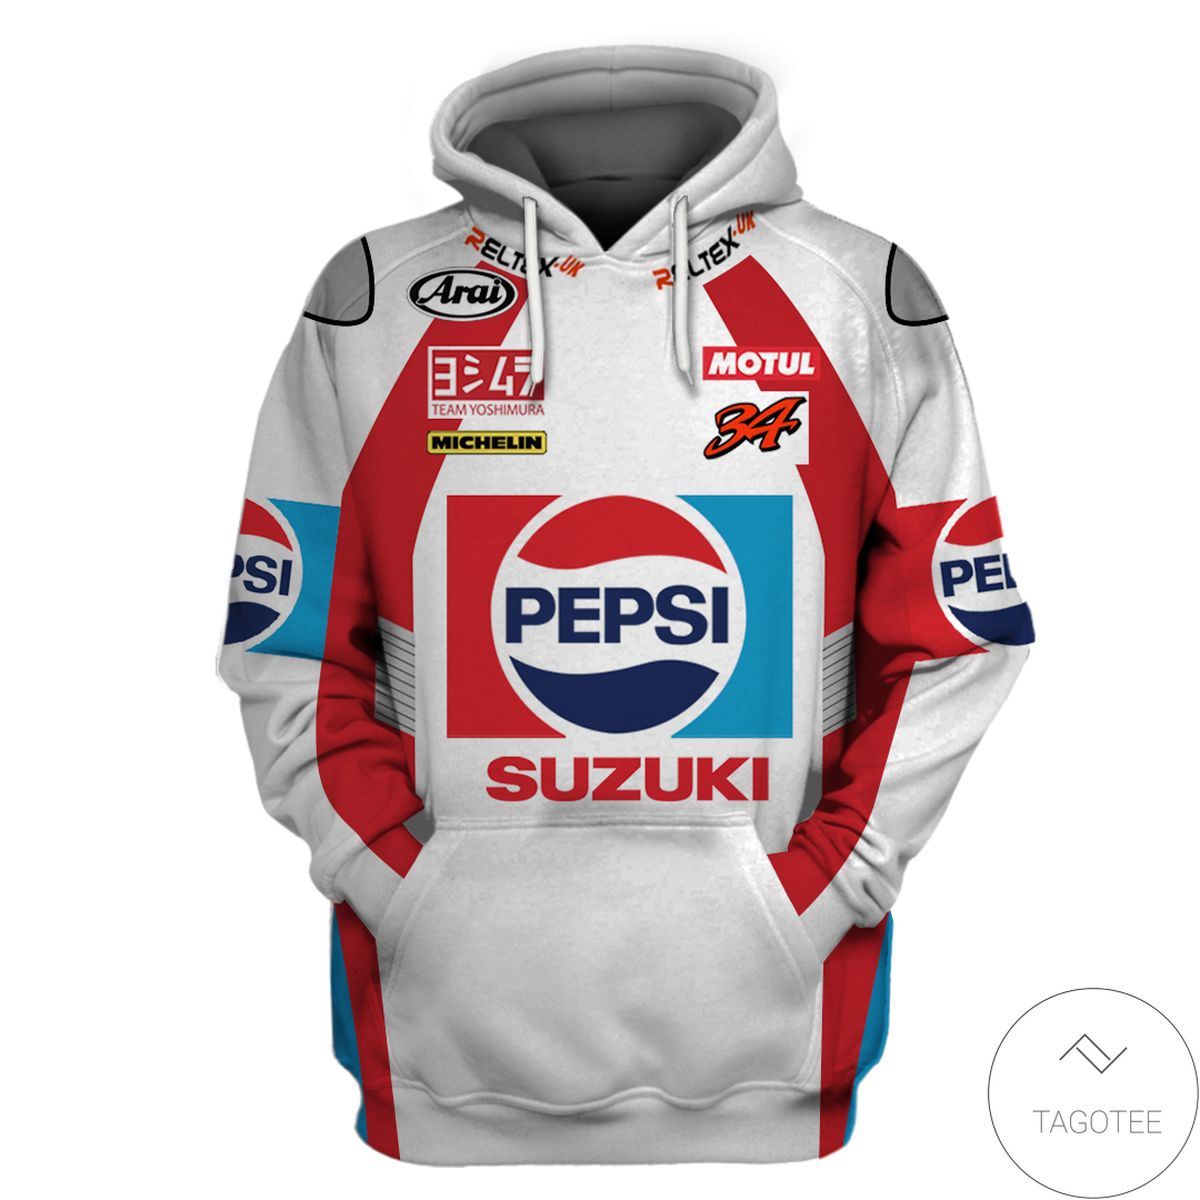 Pepsi Suzuki Rallying Branded Unisex 3d Hoodie